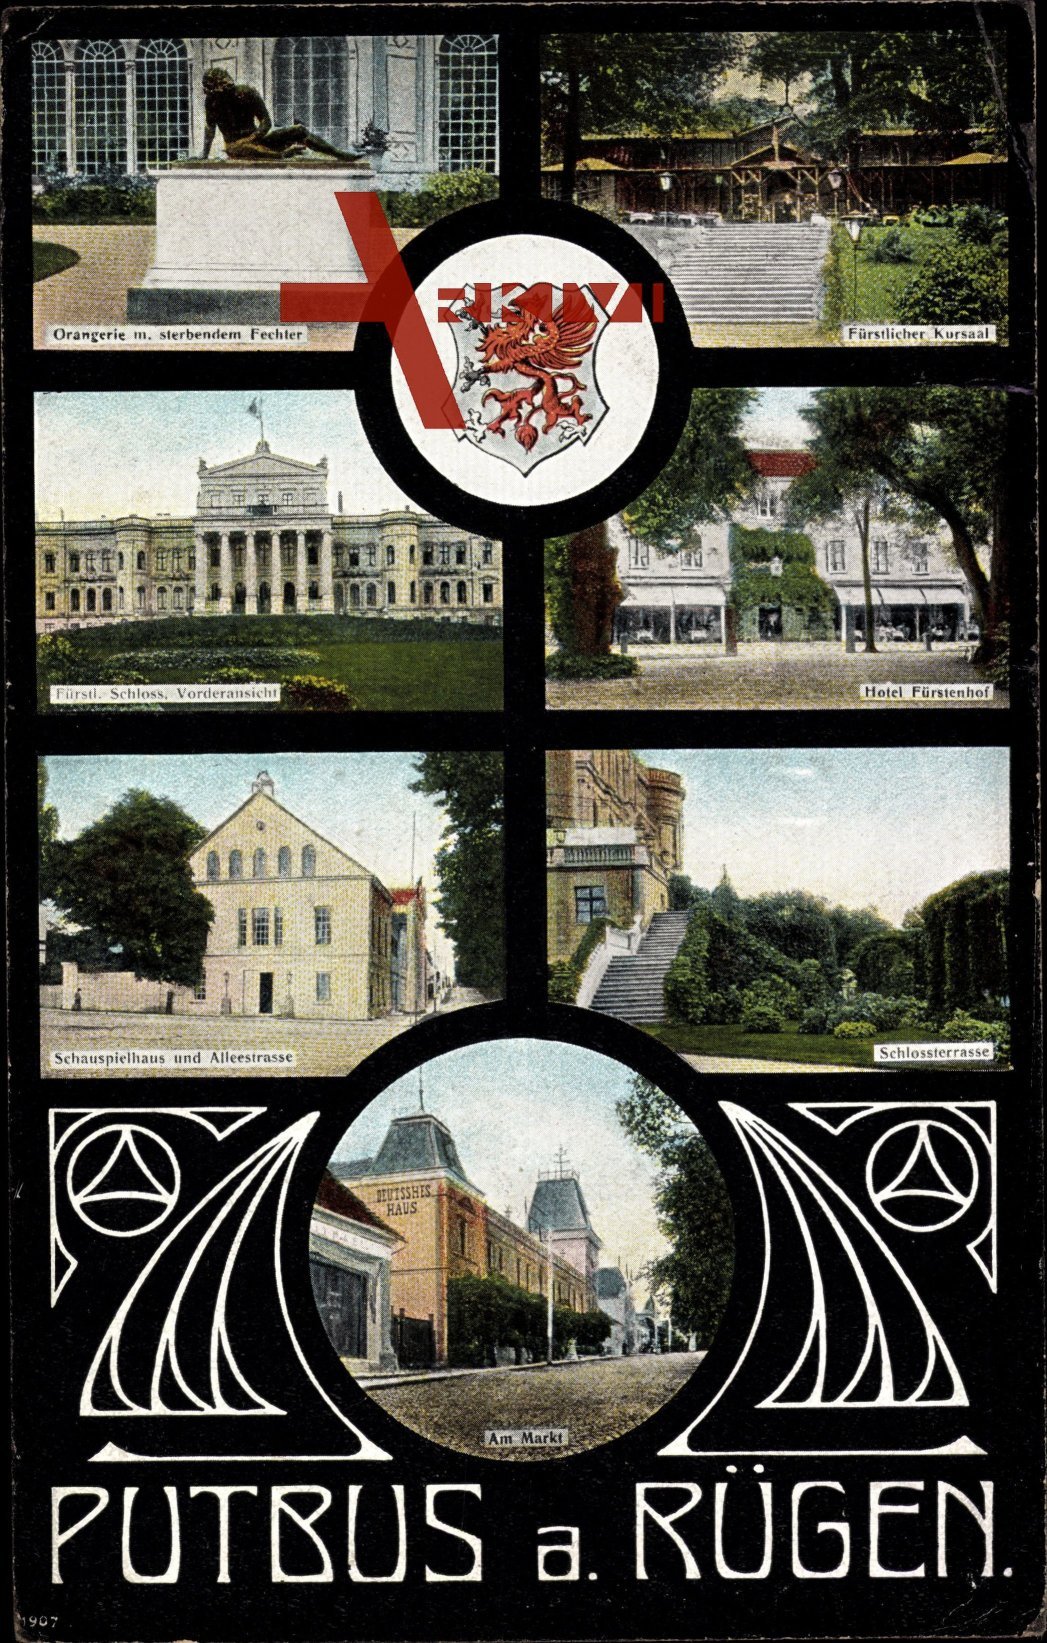 Wappen Putbus Insel Rügen, Orangerie, Sterbender Fechter, Kursaal, Schloss